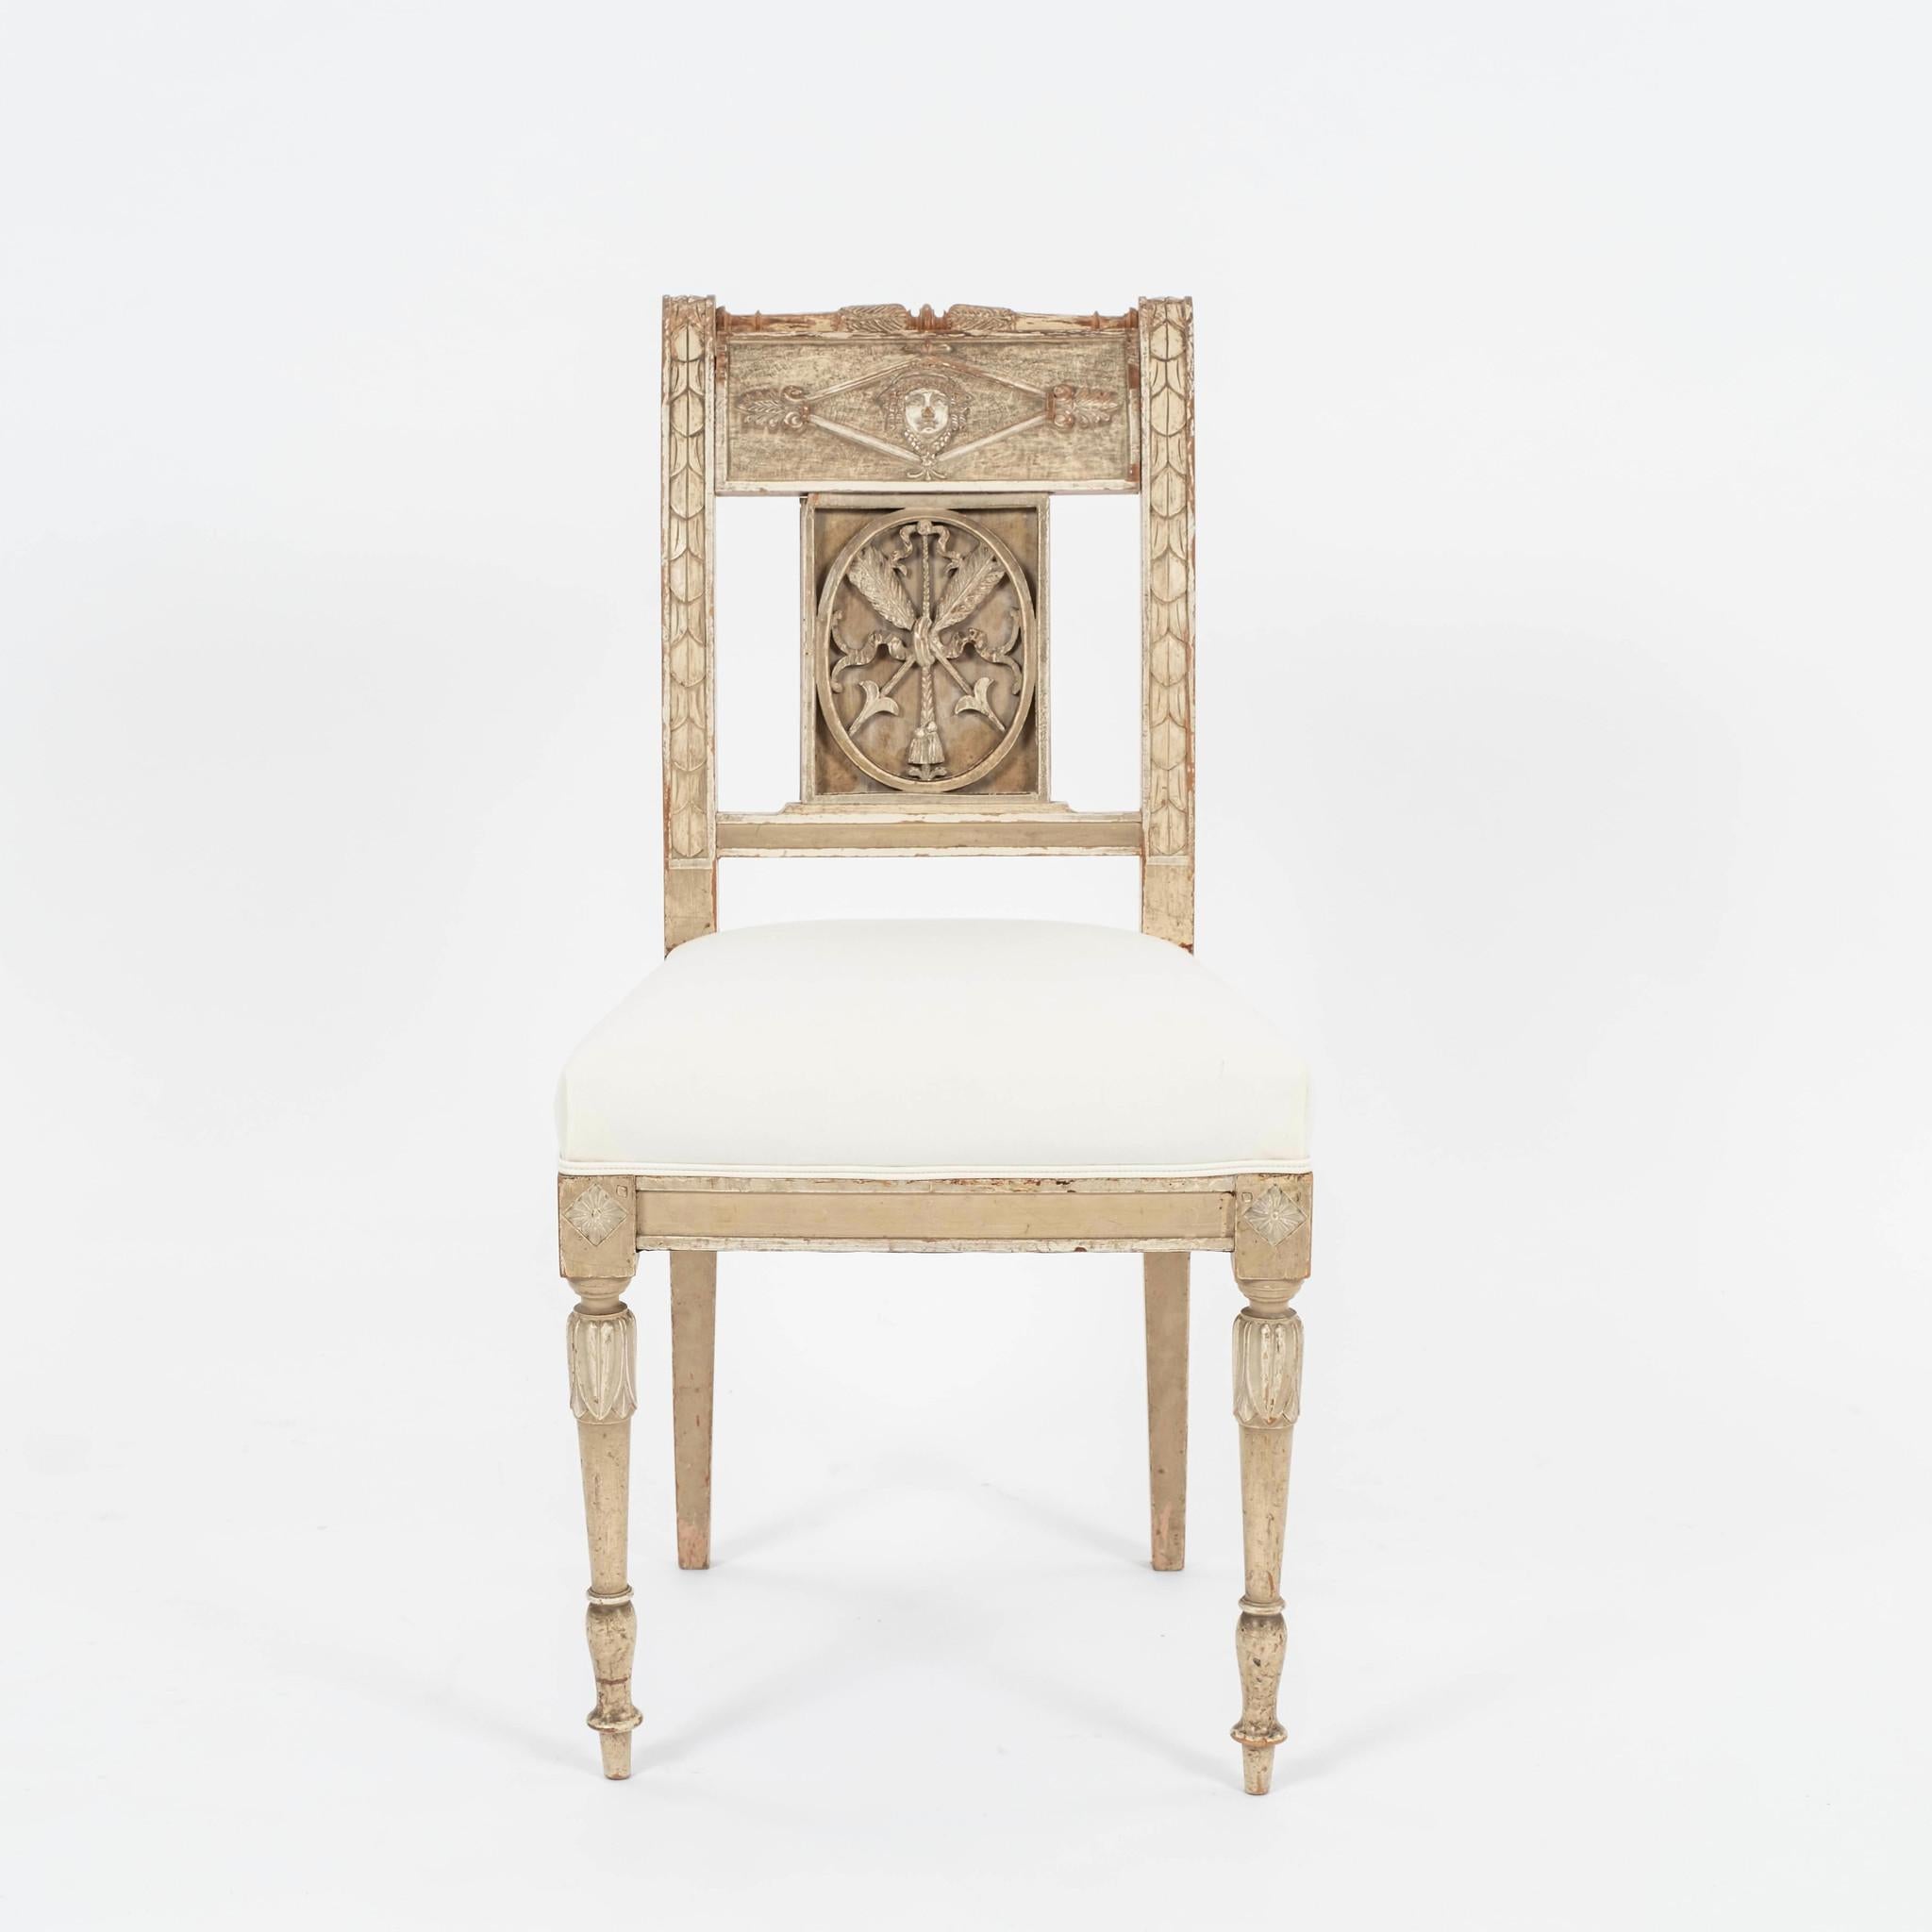 Vier gustavianische Stühle aus dem 18. Jahrhundert: wunderschön geschnitzt, gekratzt und mit außergewöhnlichen neoklassizistischen Motiven verziert. Neu gepolstert mit Inlett.
Vier verfügbar und auch durch das Paar unserer anderen Auflistung